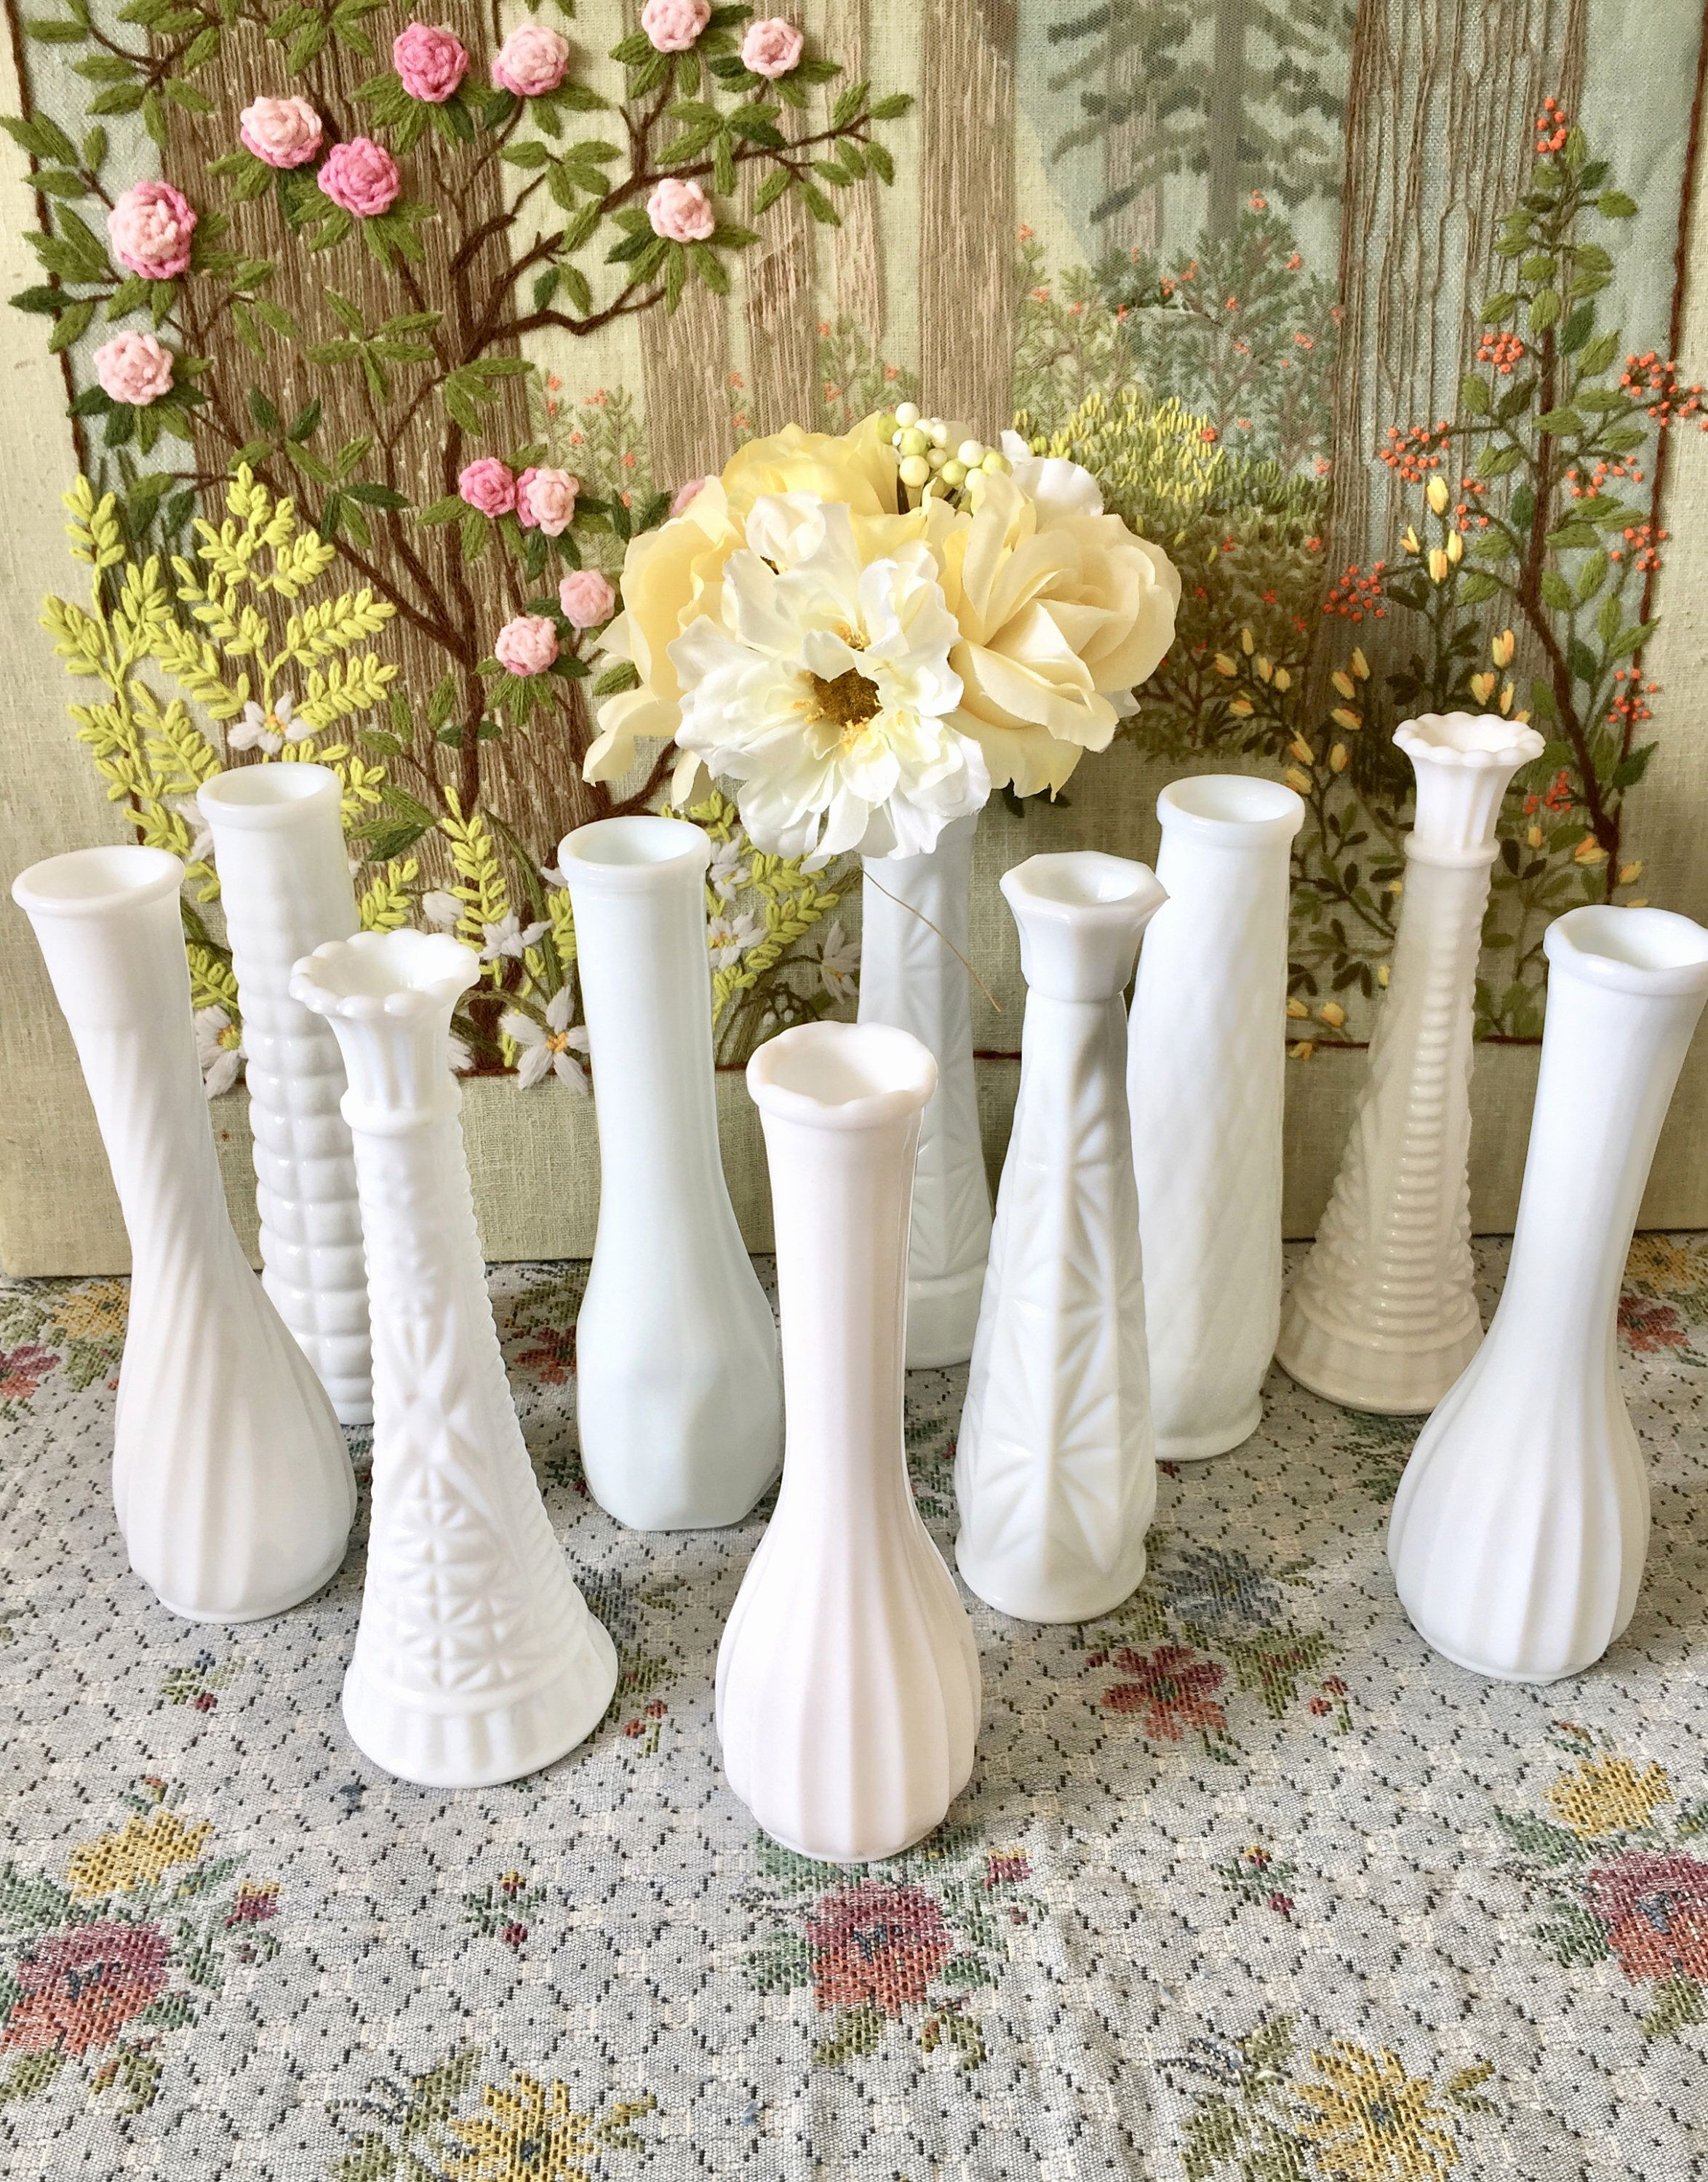 rectangular glass vase wholesale of 40 glass vases bulk the weekly world for centerpiece vases in bulk vase and cellar image avorcor